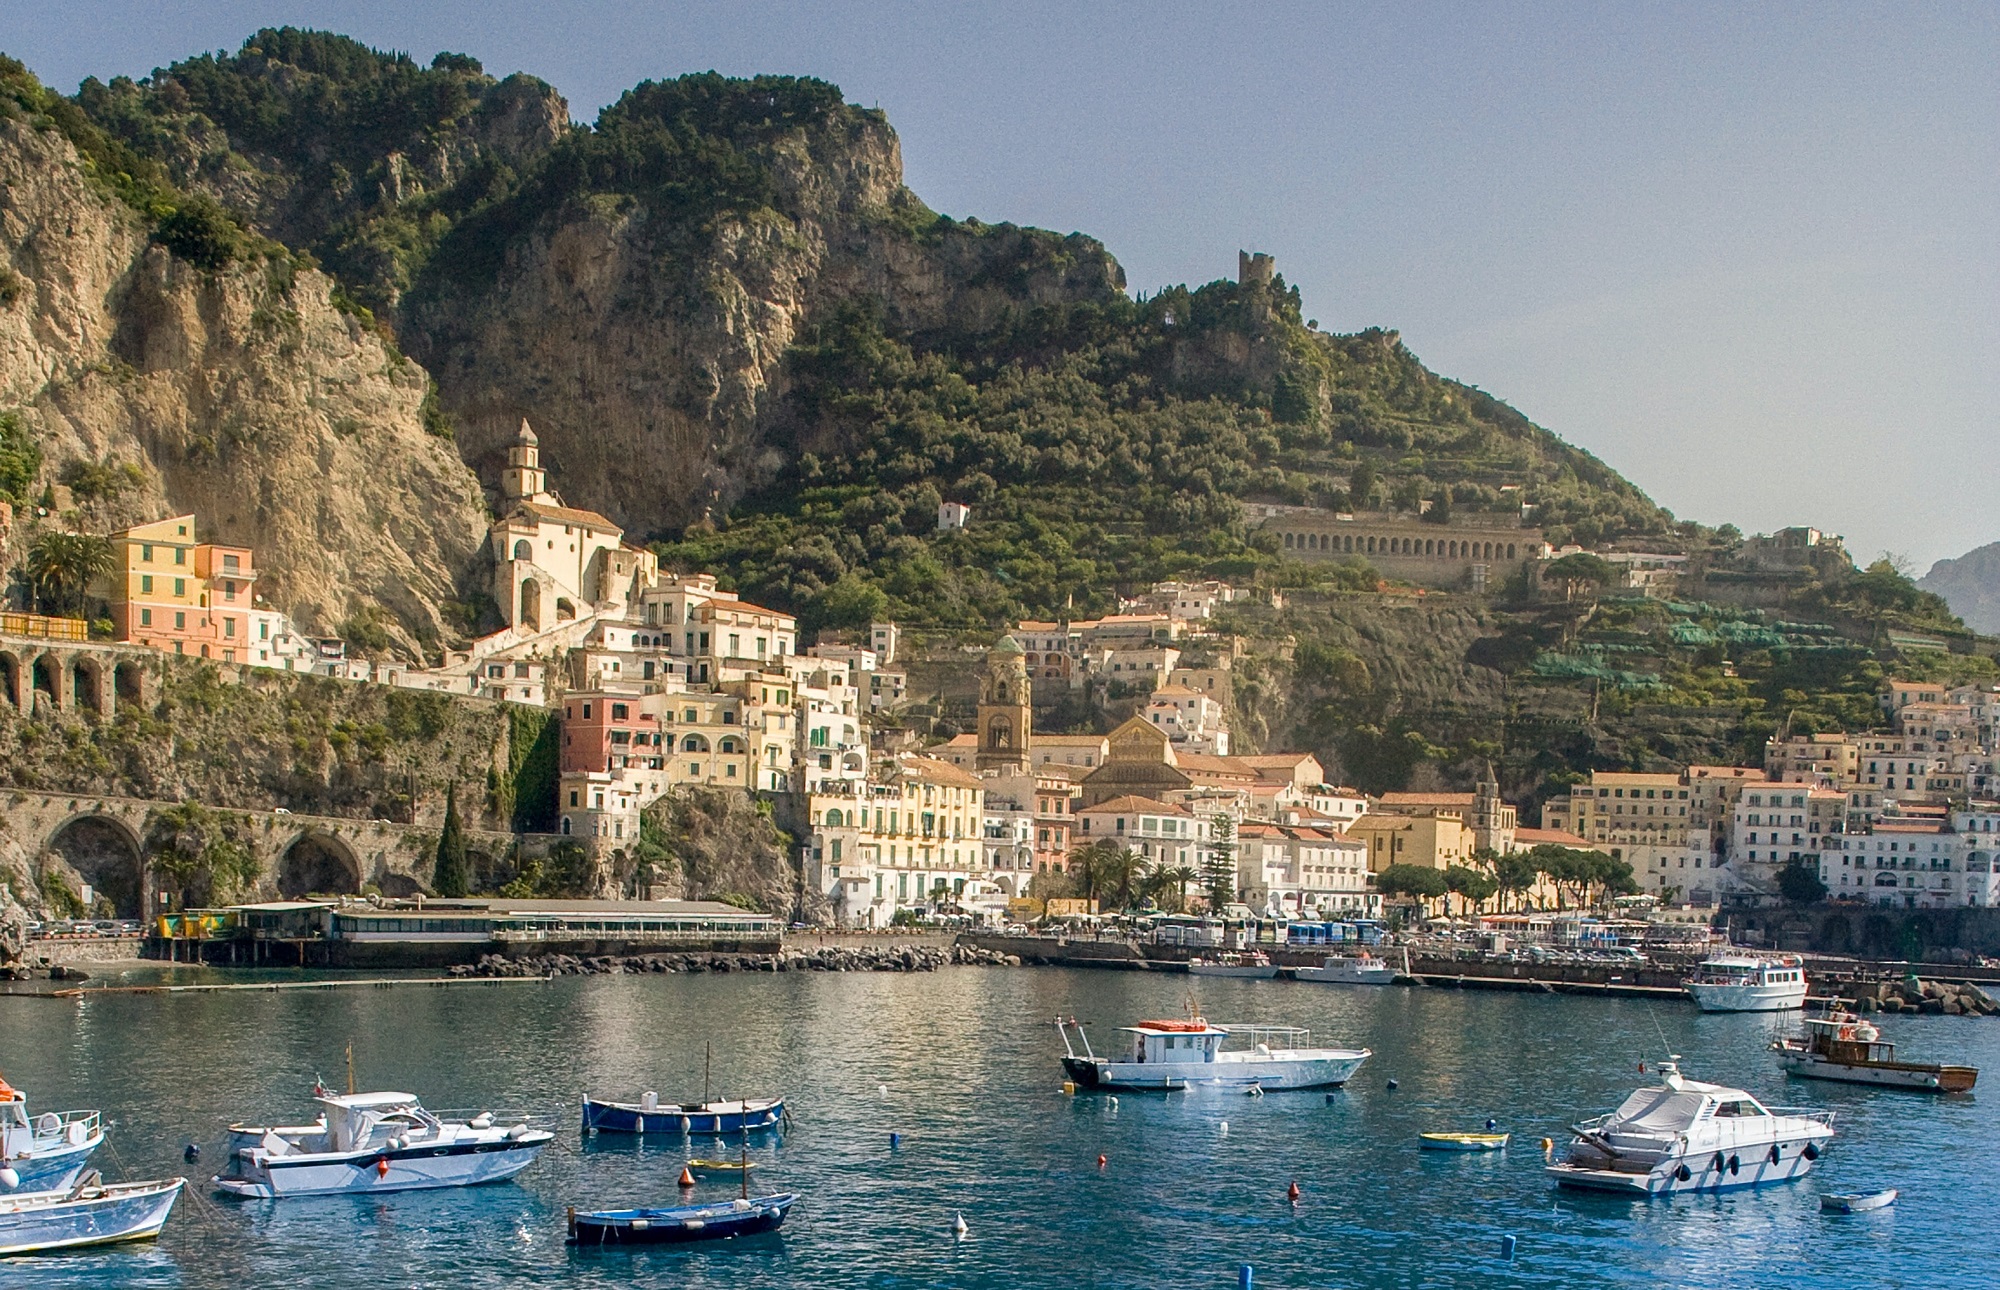 Amalfi and the Coast: land, sea, literature